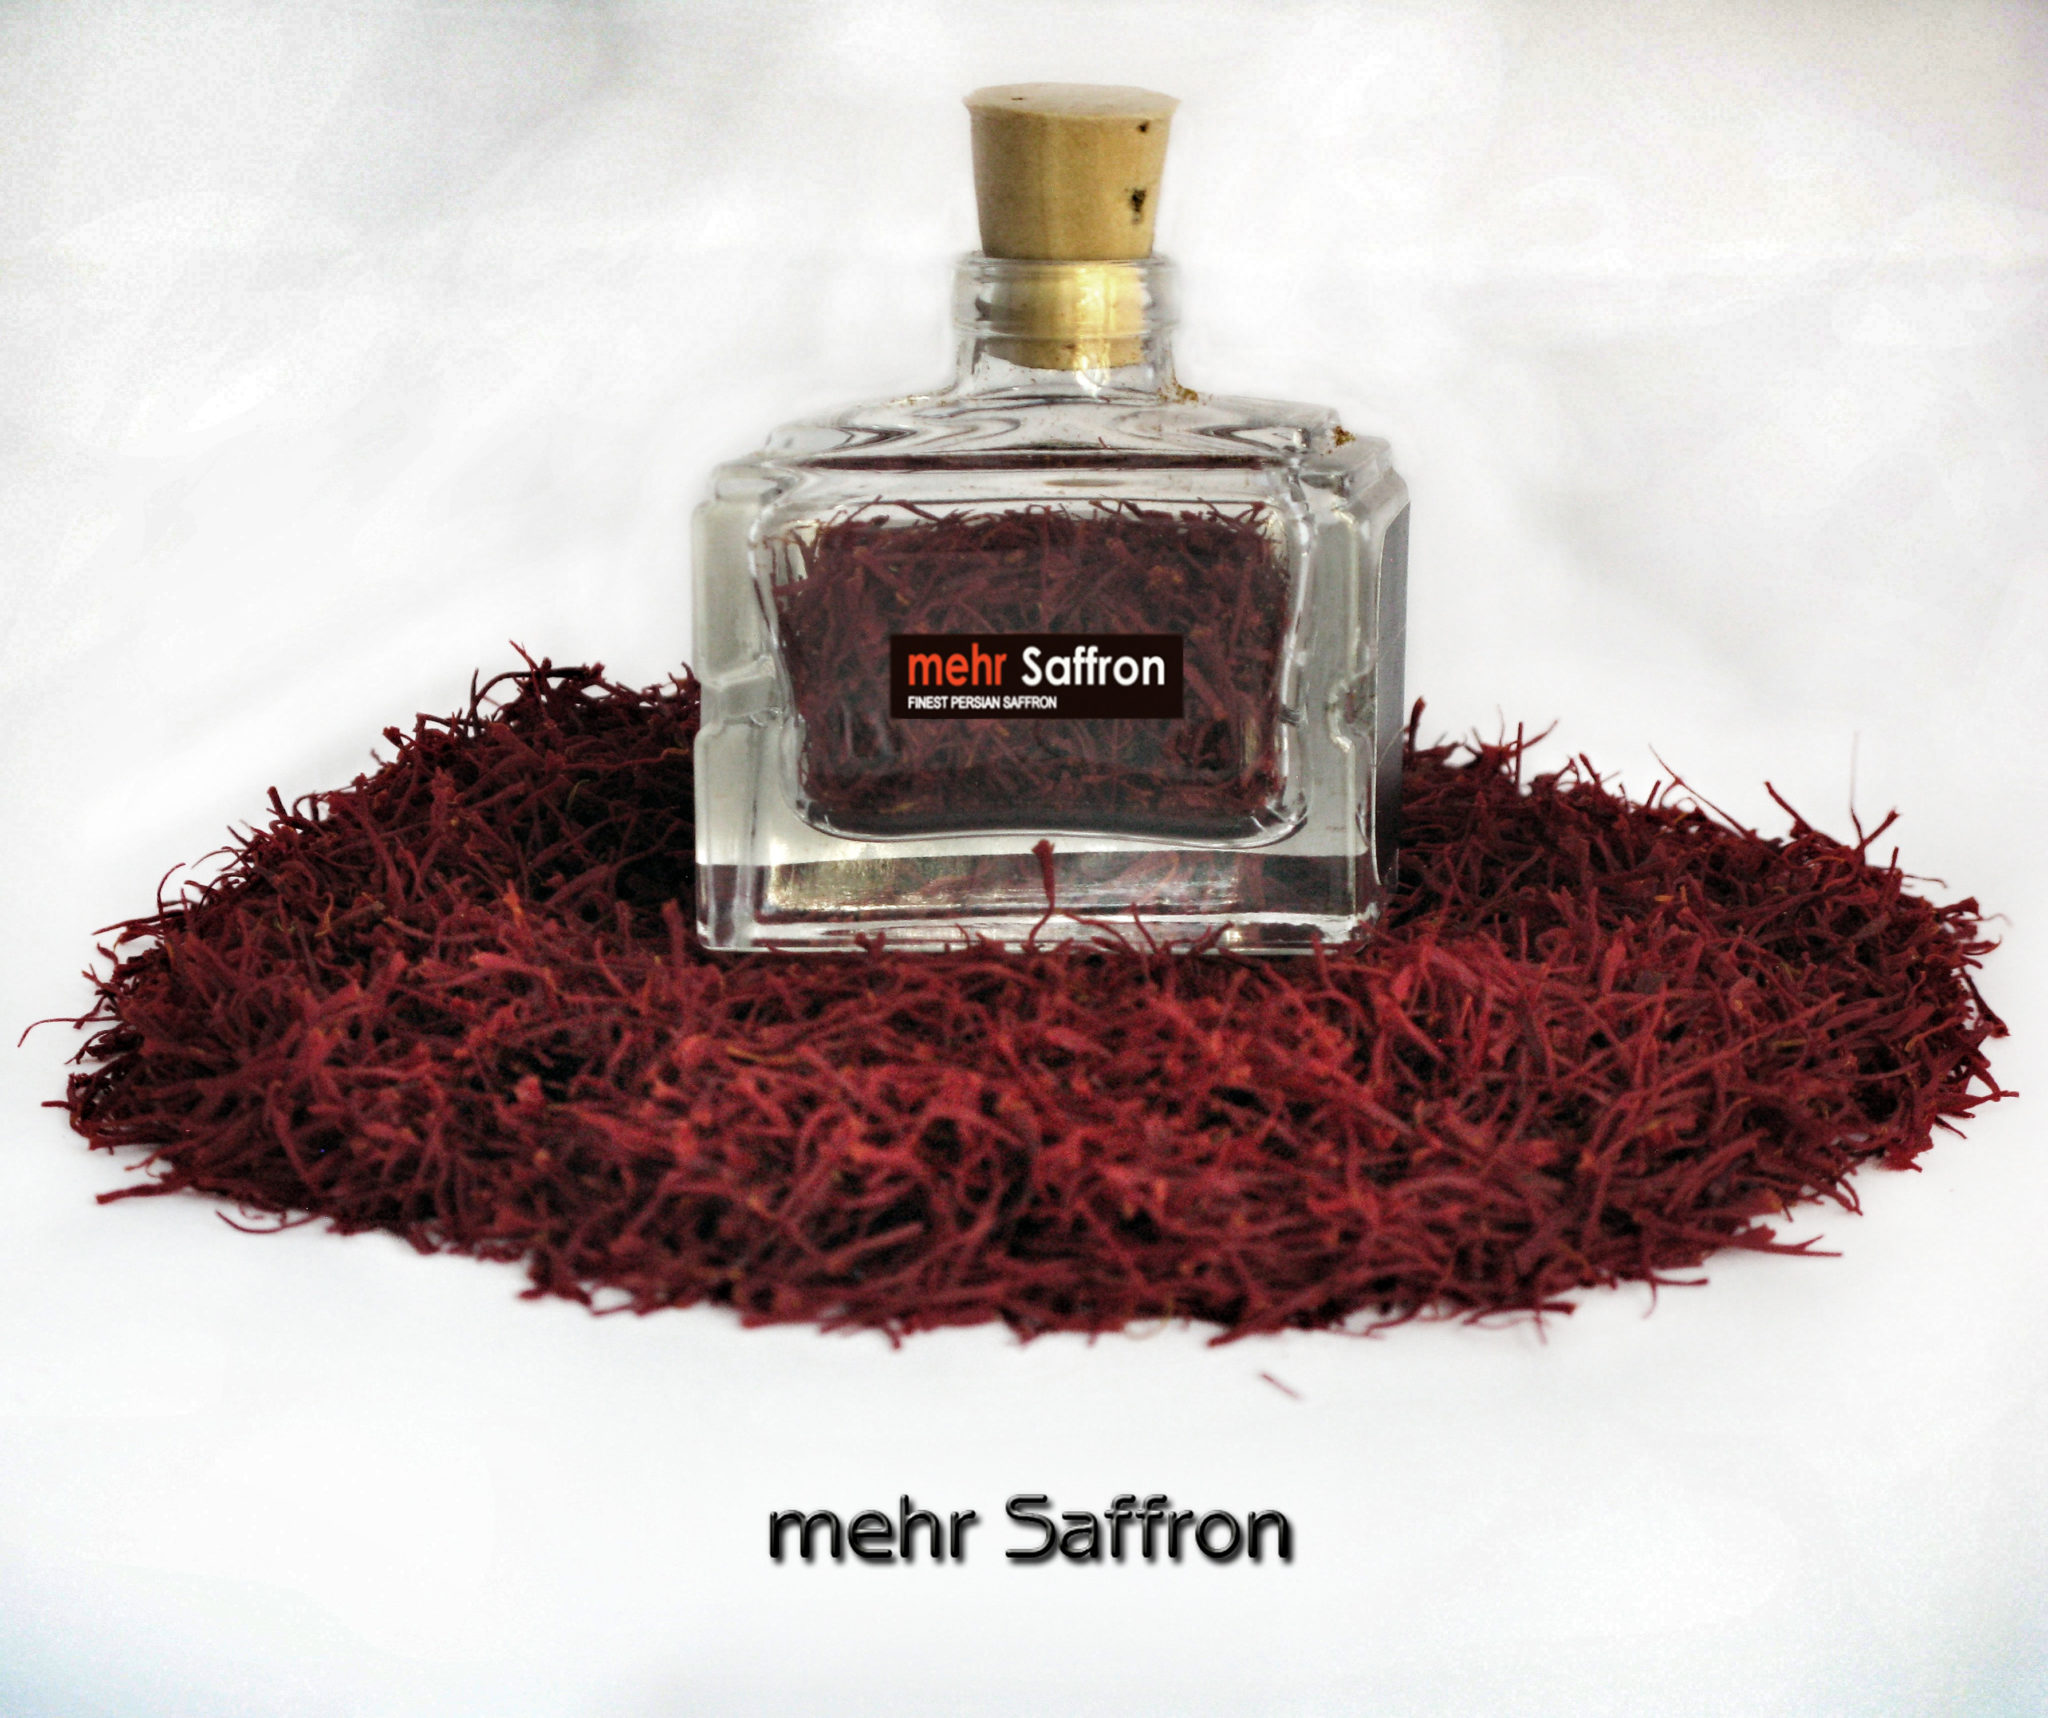 The best Persian Saffron